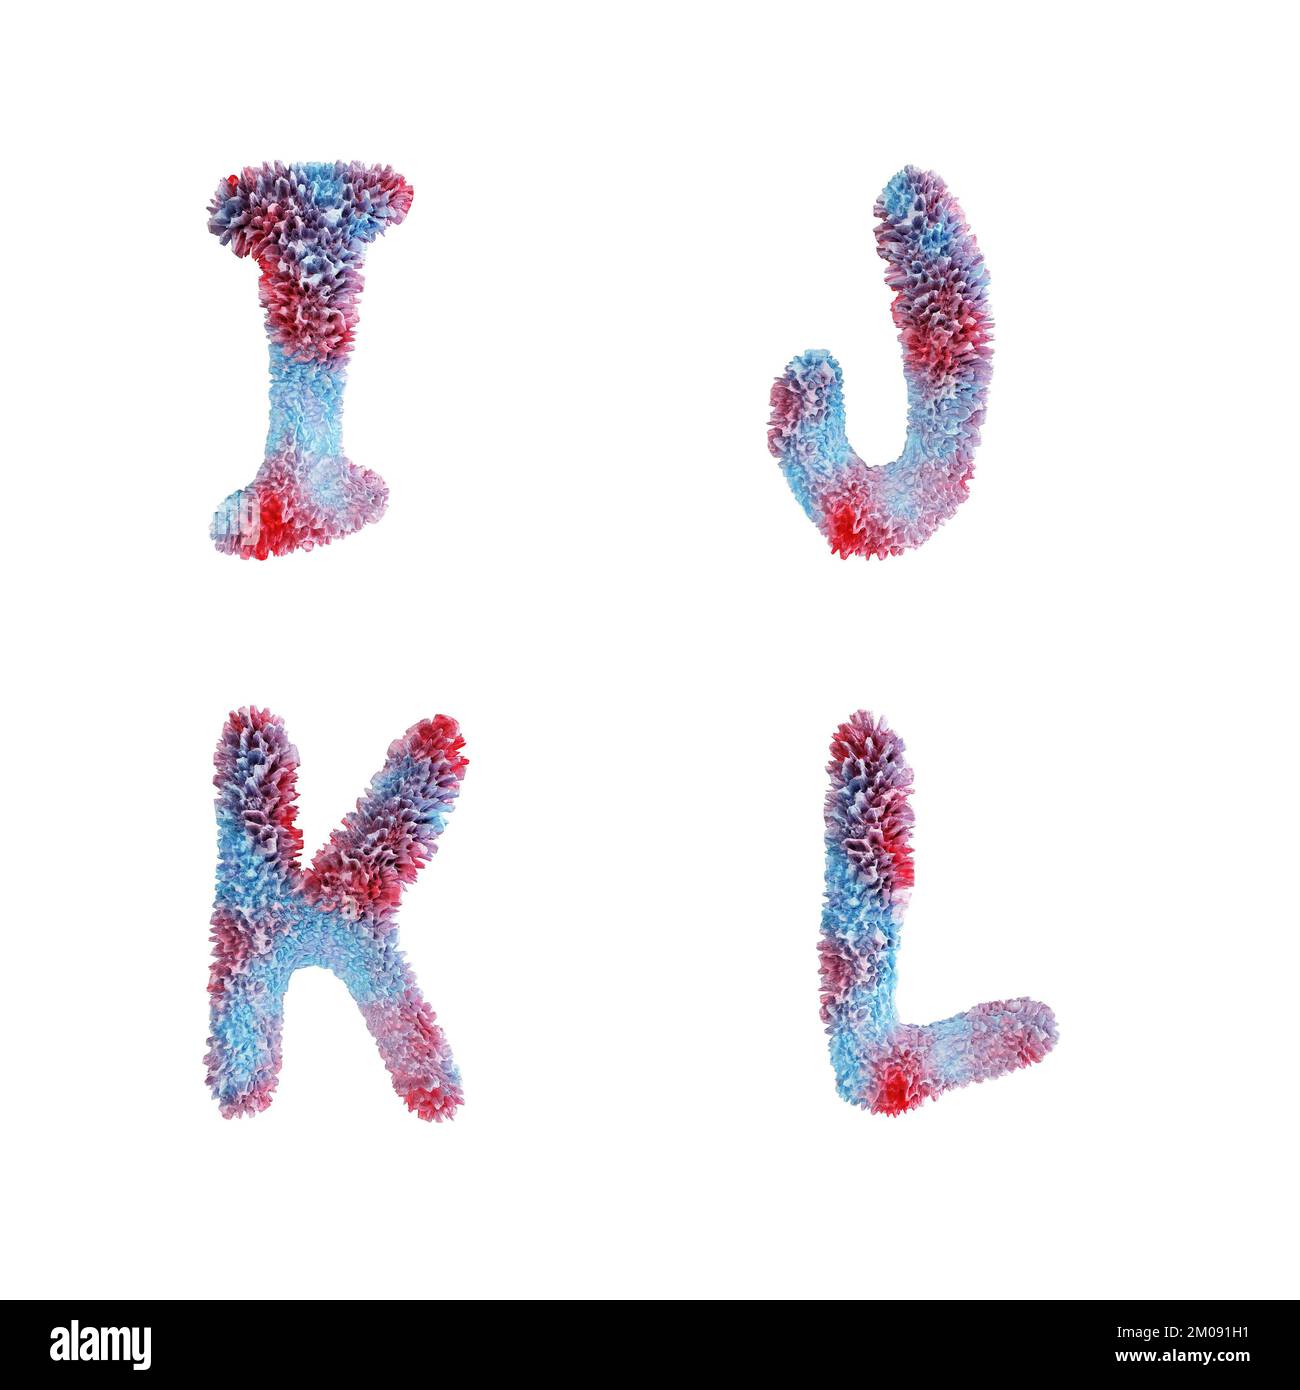 3D rappresentazione dell'alfabeto maiuscolo della barriera corallina - lettere i-L. Foto Stock